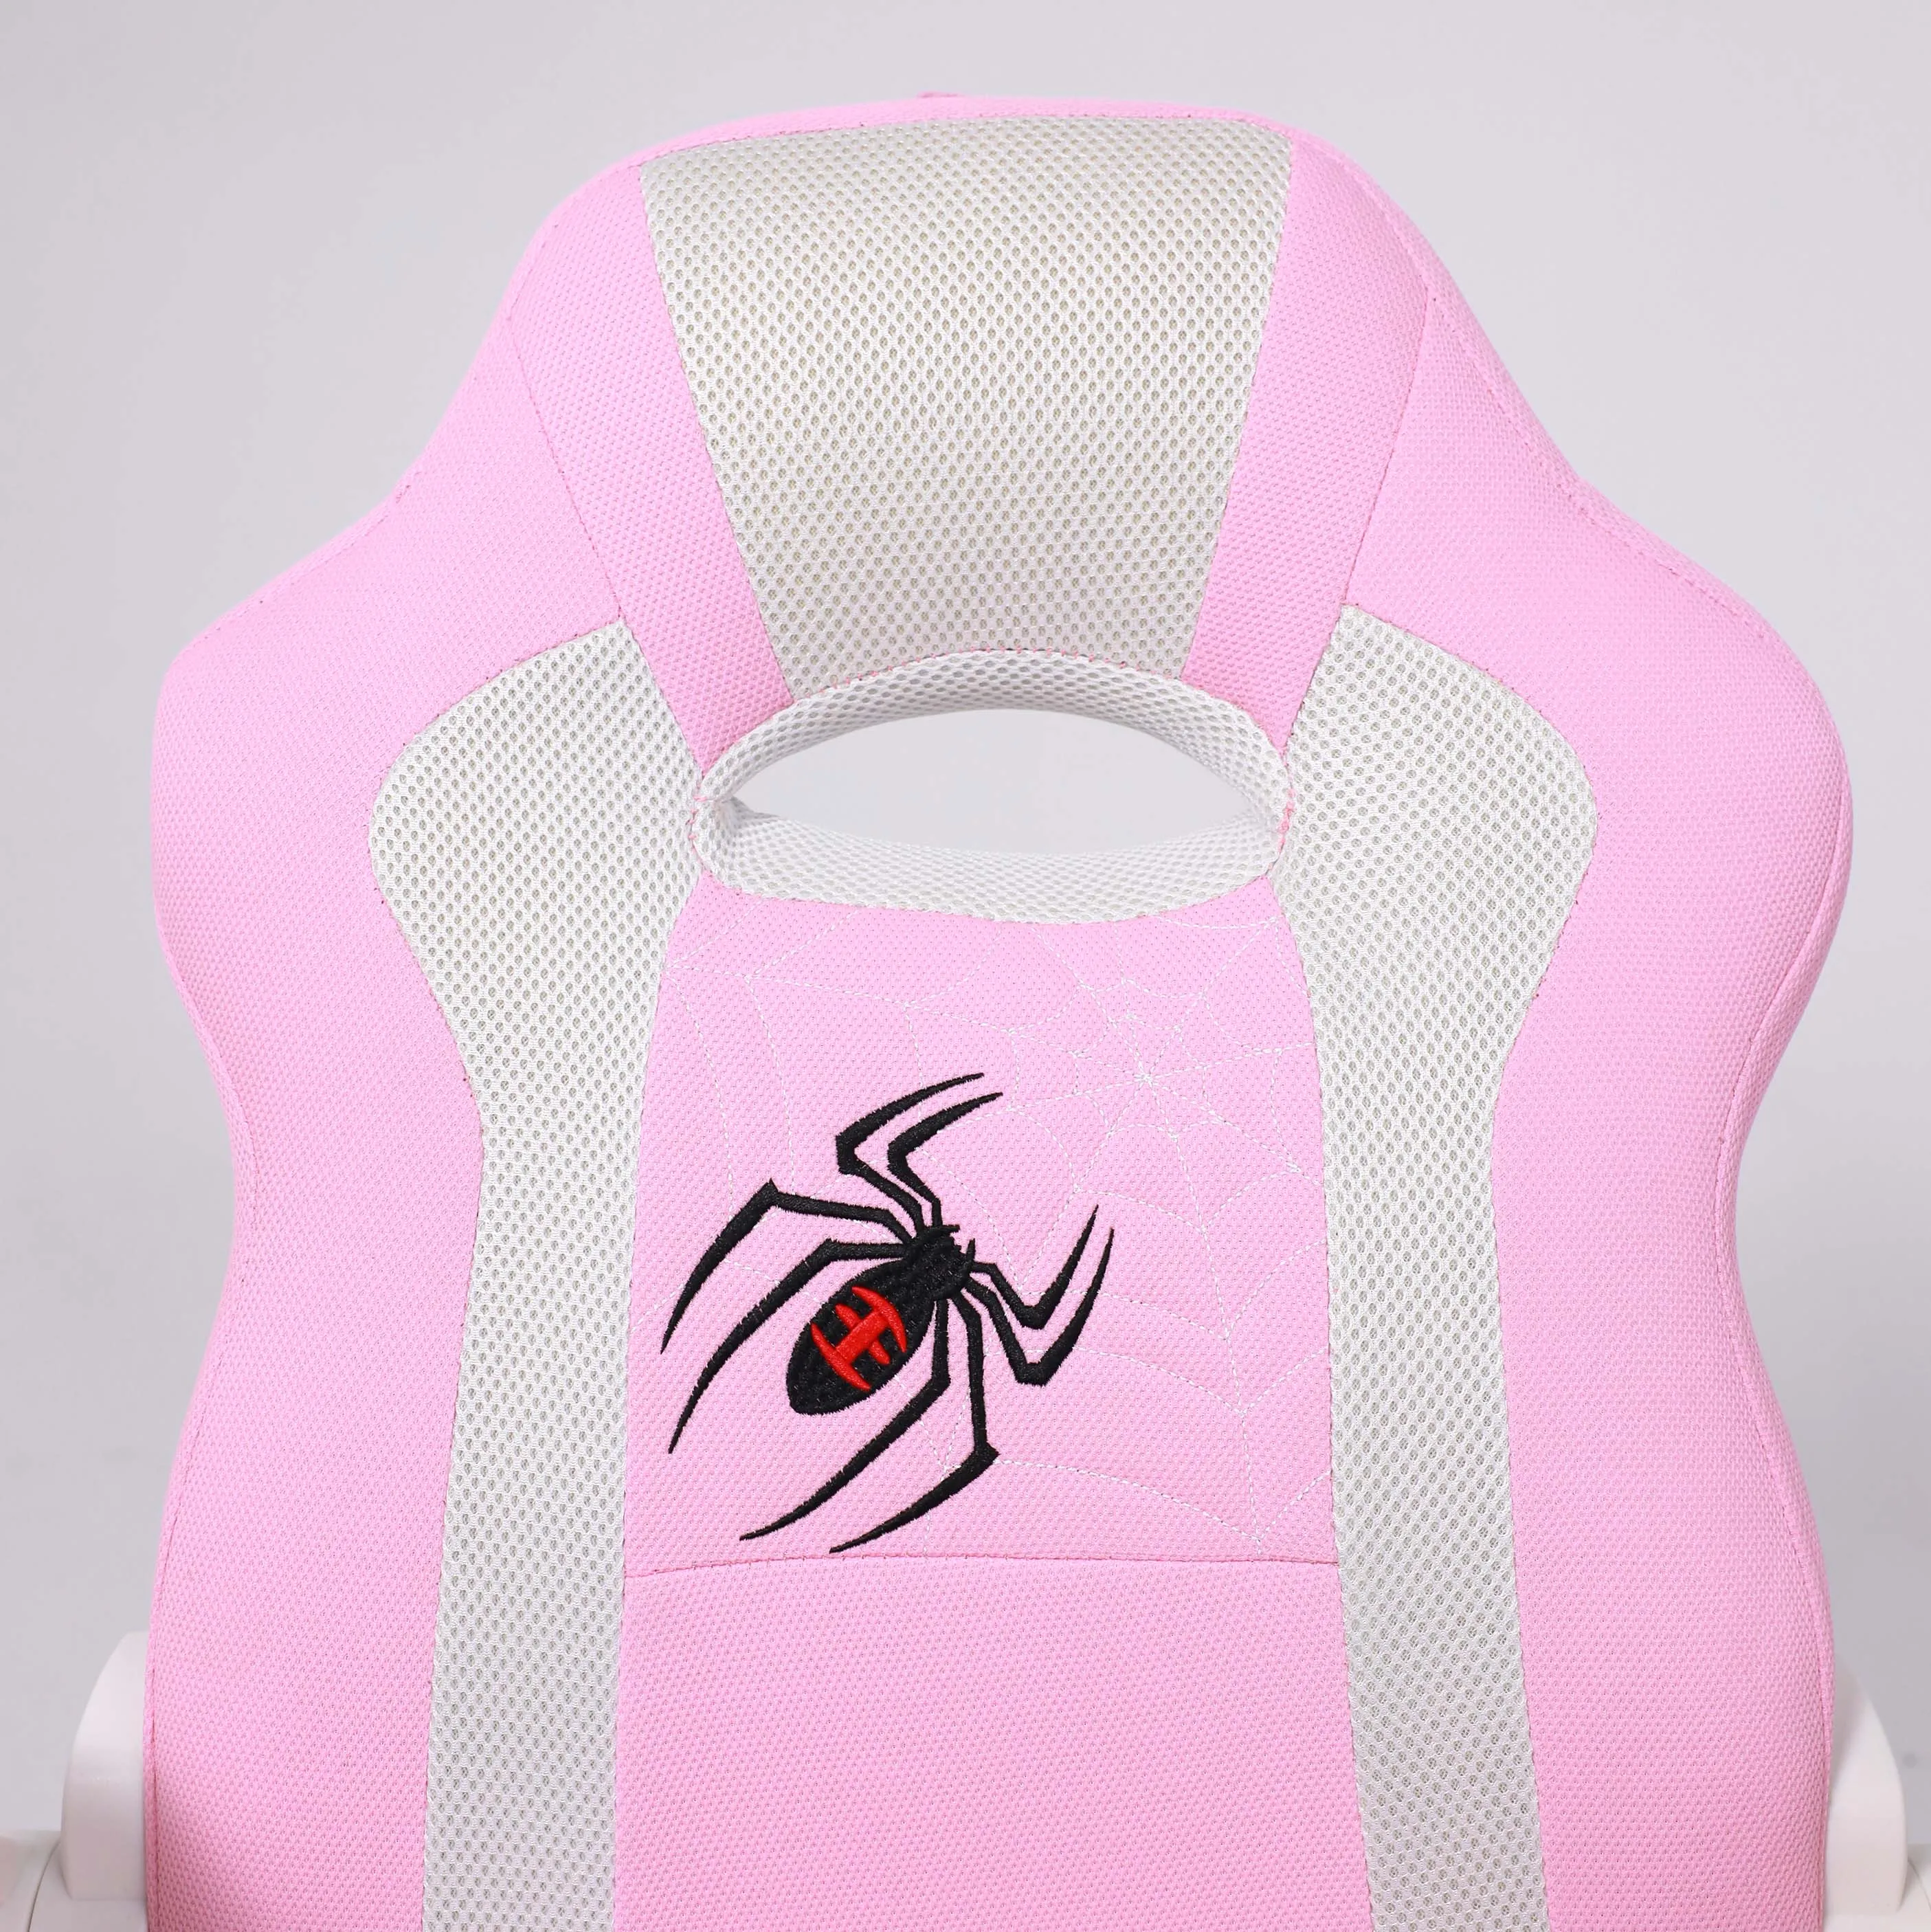 Кресло компьютерное детское ELEN ткань розовый  102536